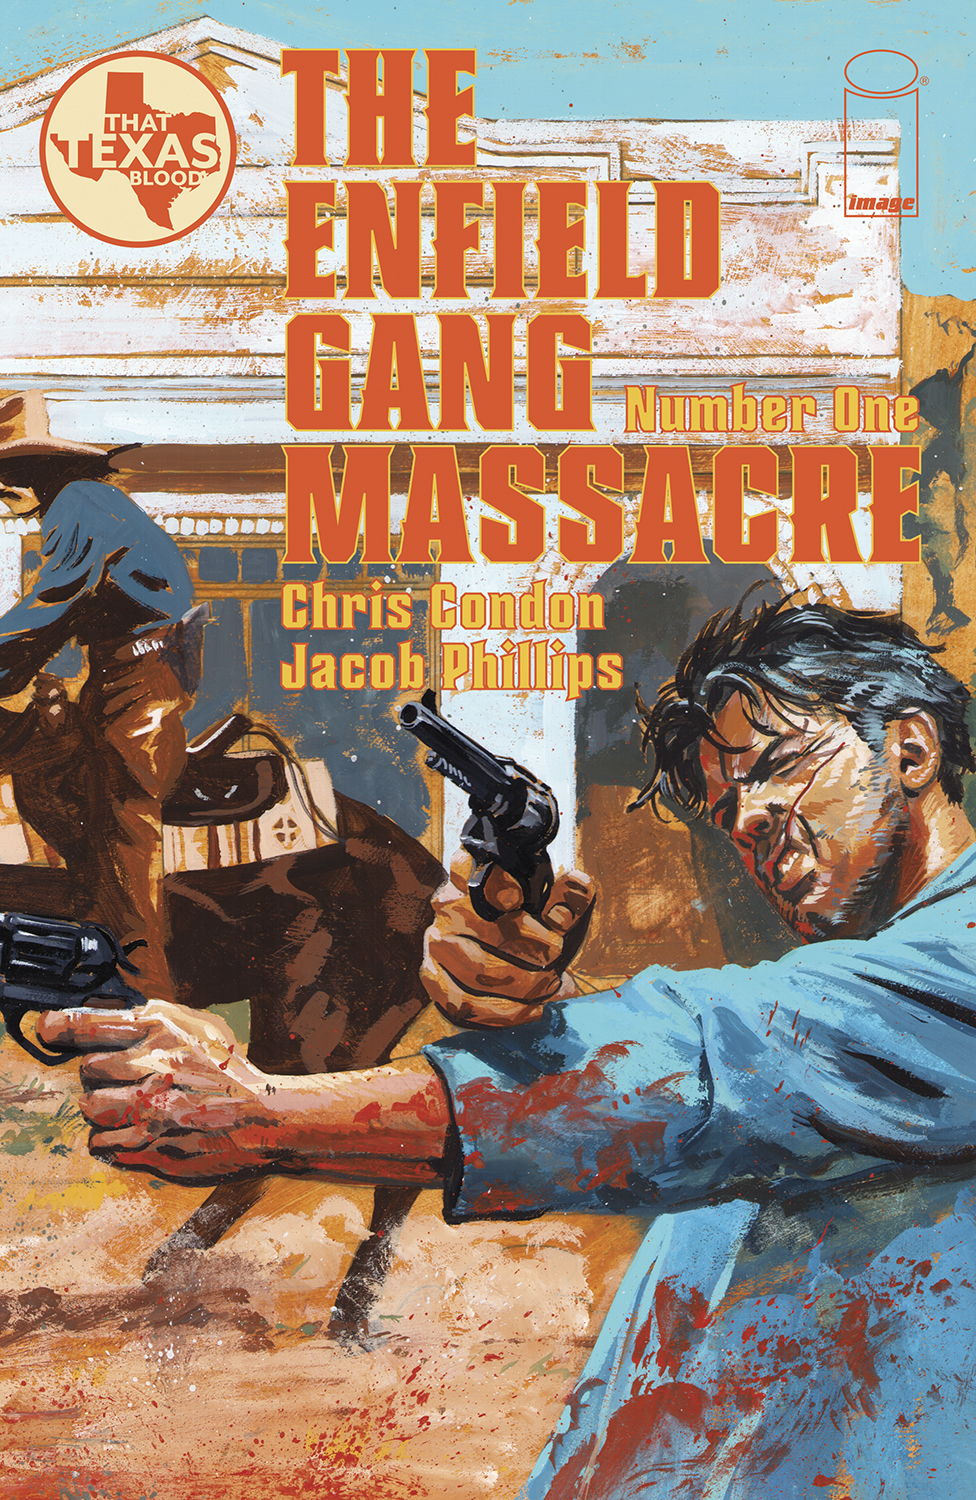 Enfield Gang Massacre #1 (Mature) (Of 6)